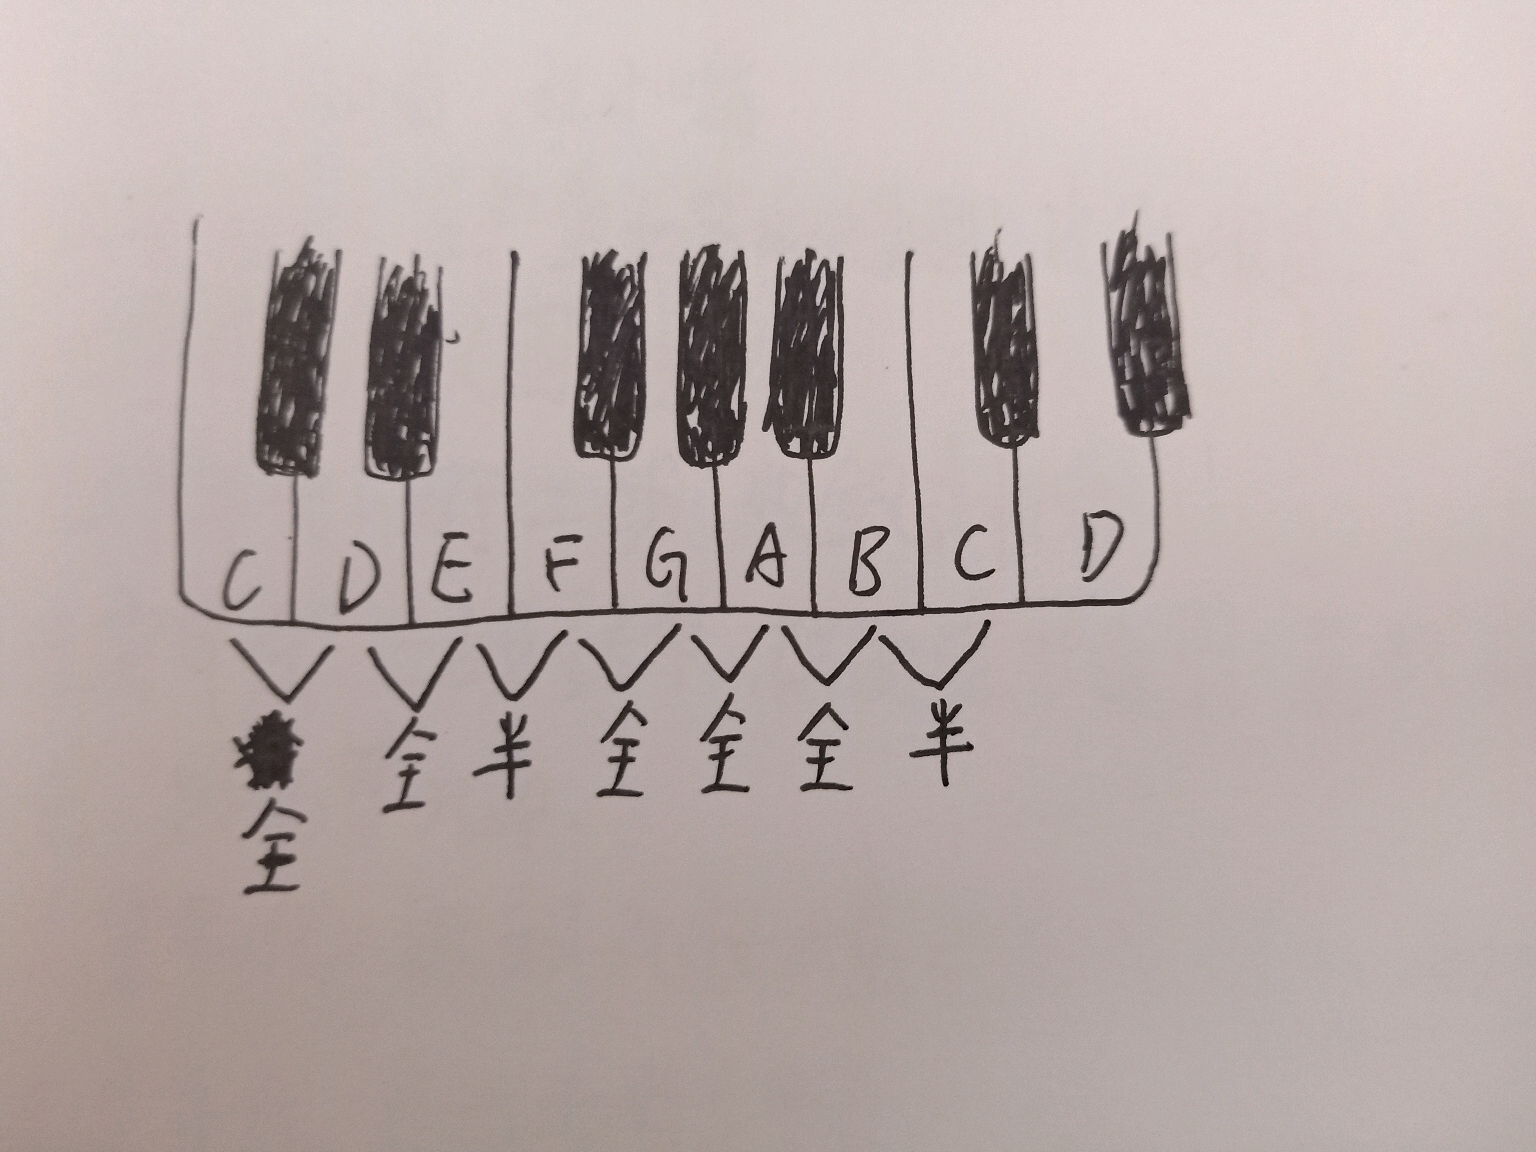 这样一来,一个c大调音阶的全音半音关系就成了一个音乐上的"密码":全